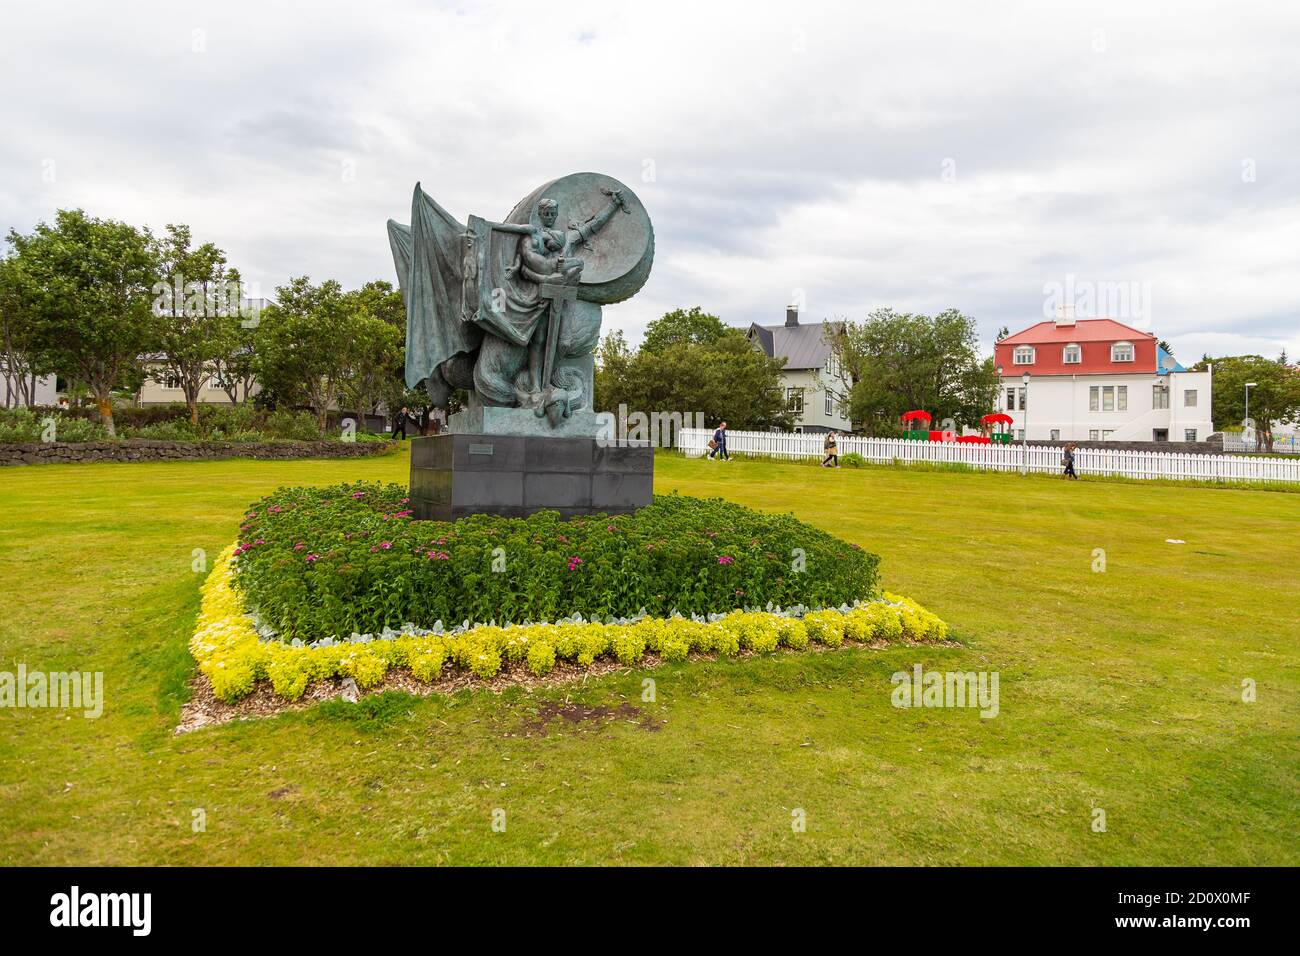 Reykjavik,Iceland- 27 August 2015: Monument at Midborg on Lake Tjornin in the city center. Einar Jonsson statue called - The Spell Broken. Stock Photo